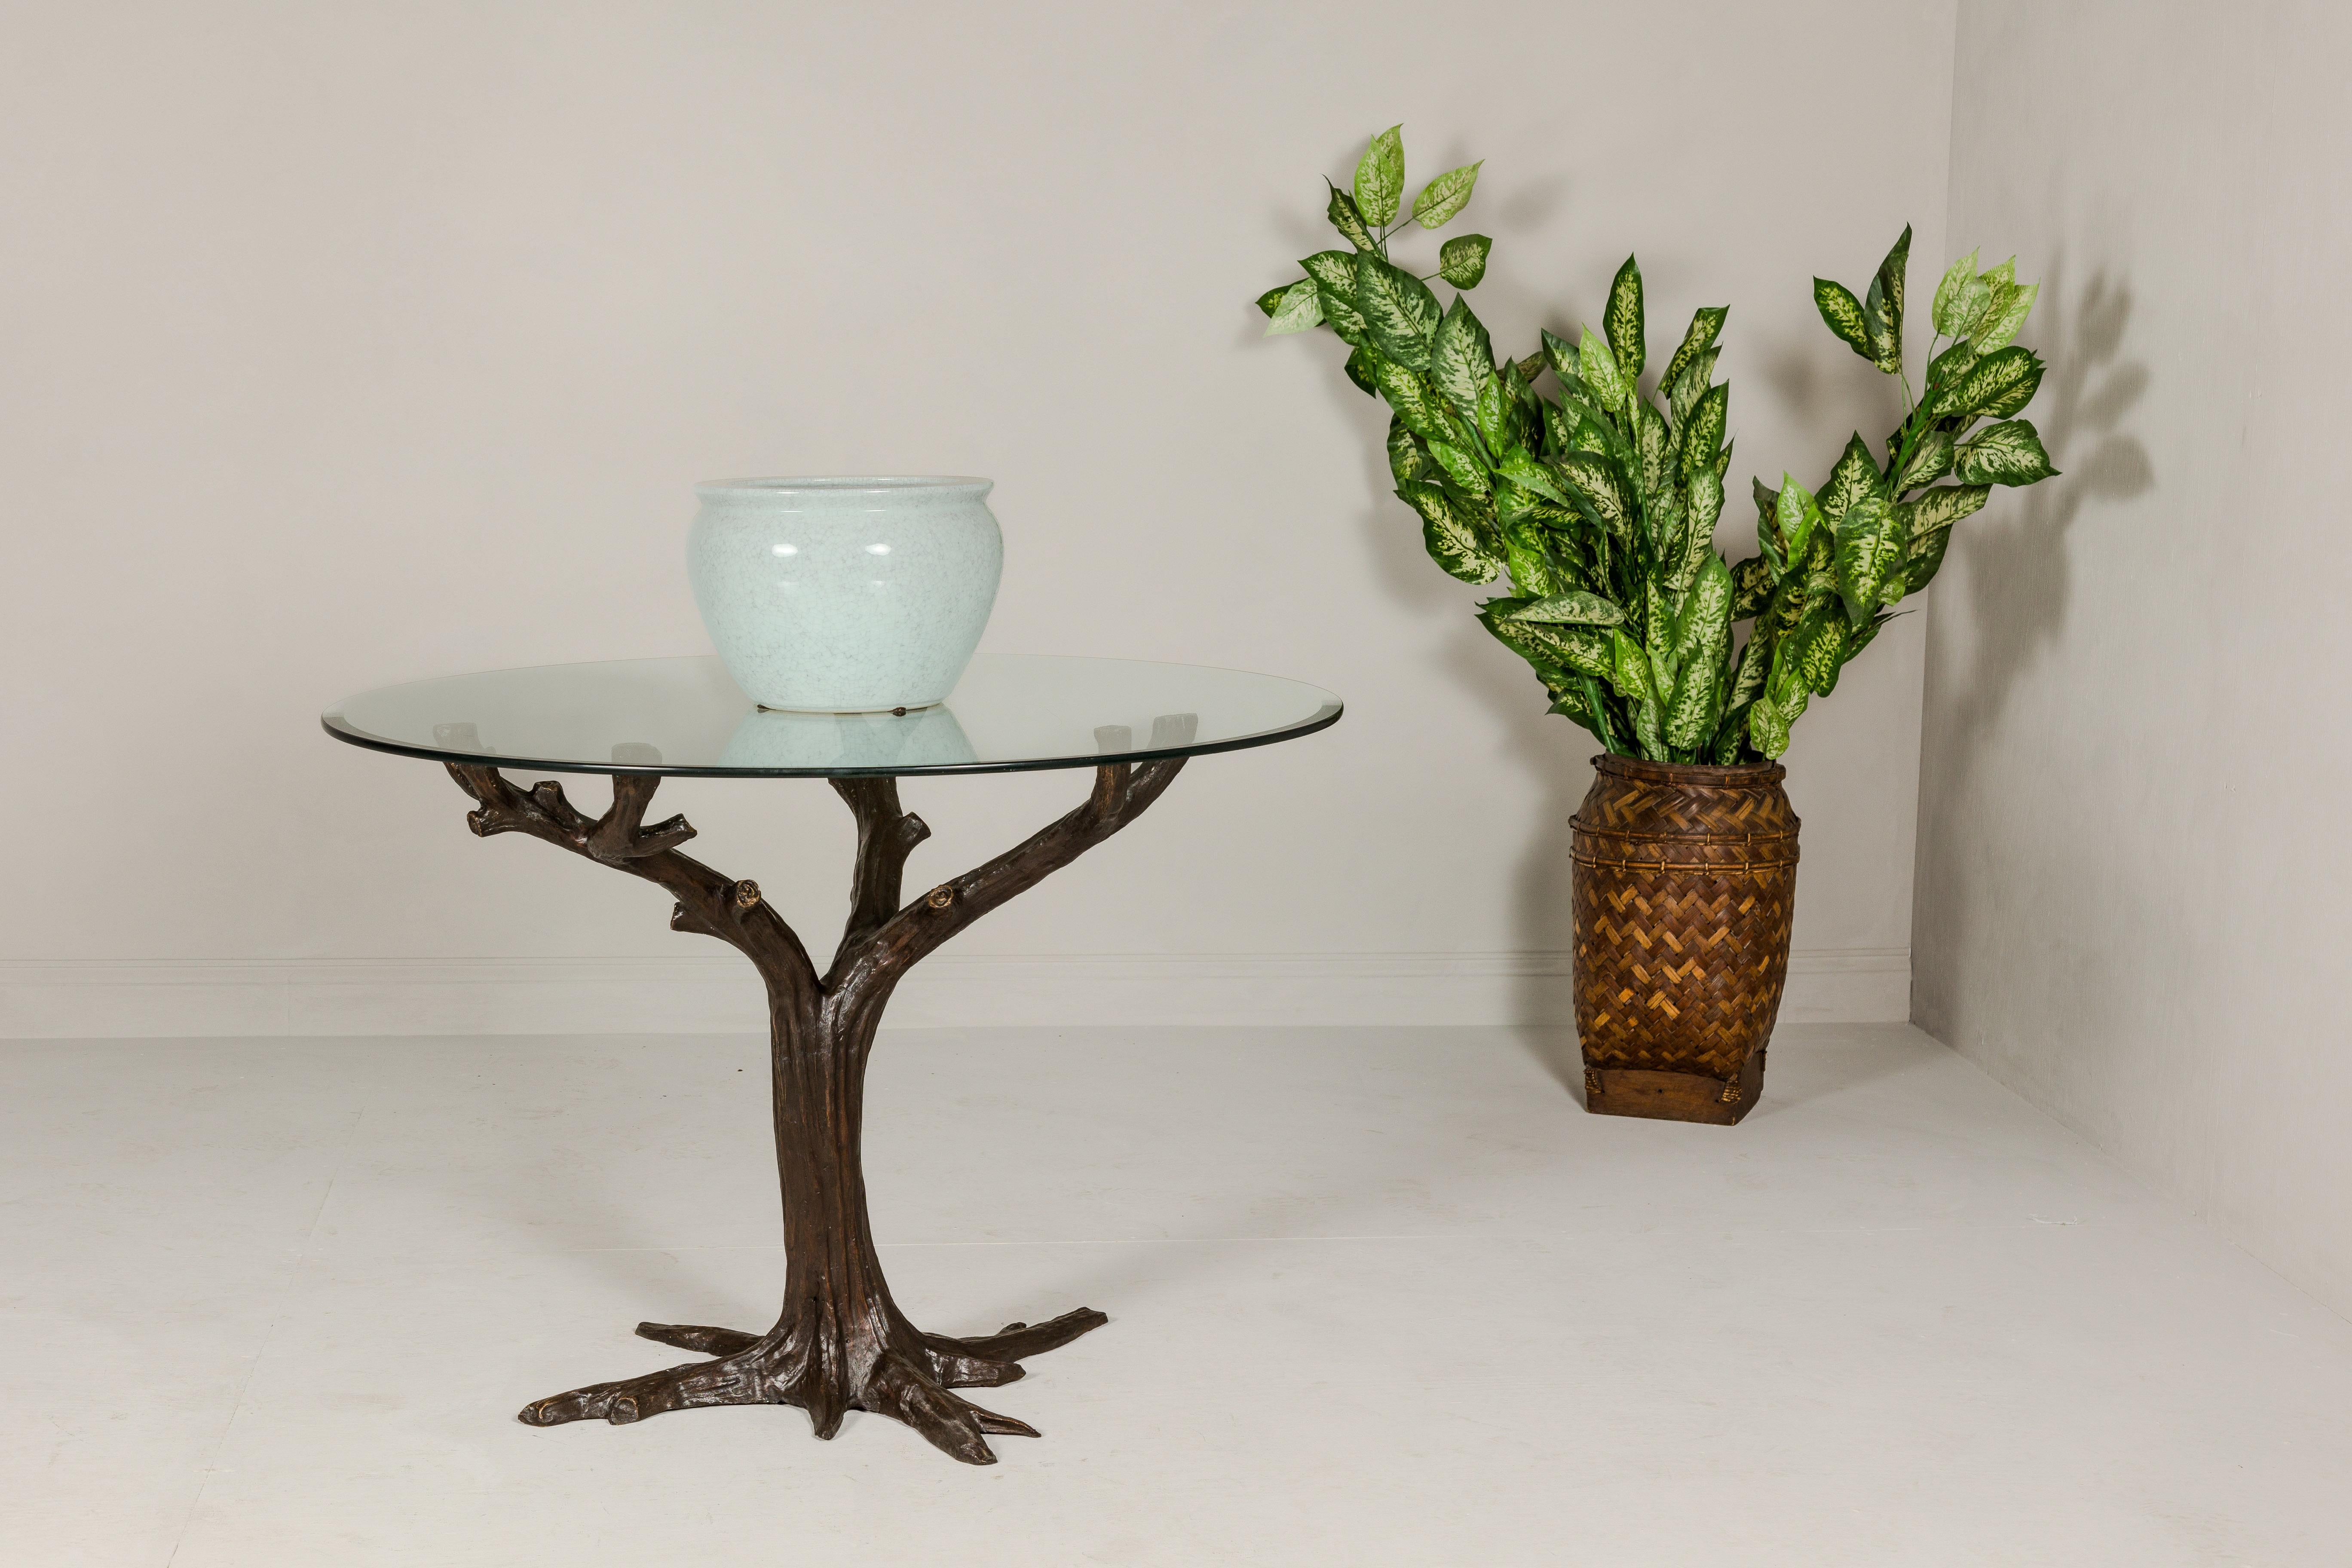 Cette base de table contemporaine en bronze est une fusion frappante de l'inspiration naturelle et de l'art moderne. Actuellement en production avec un délai de 20 semaines, elle présente une riche patine brun foncé qui met en valeur les détails